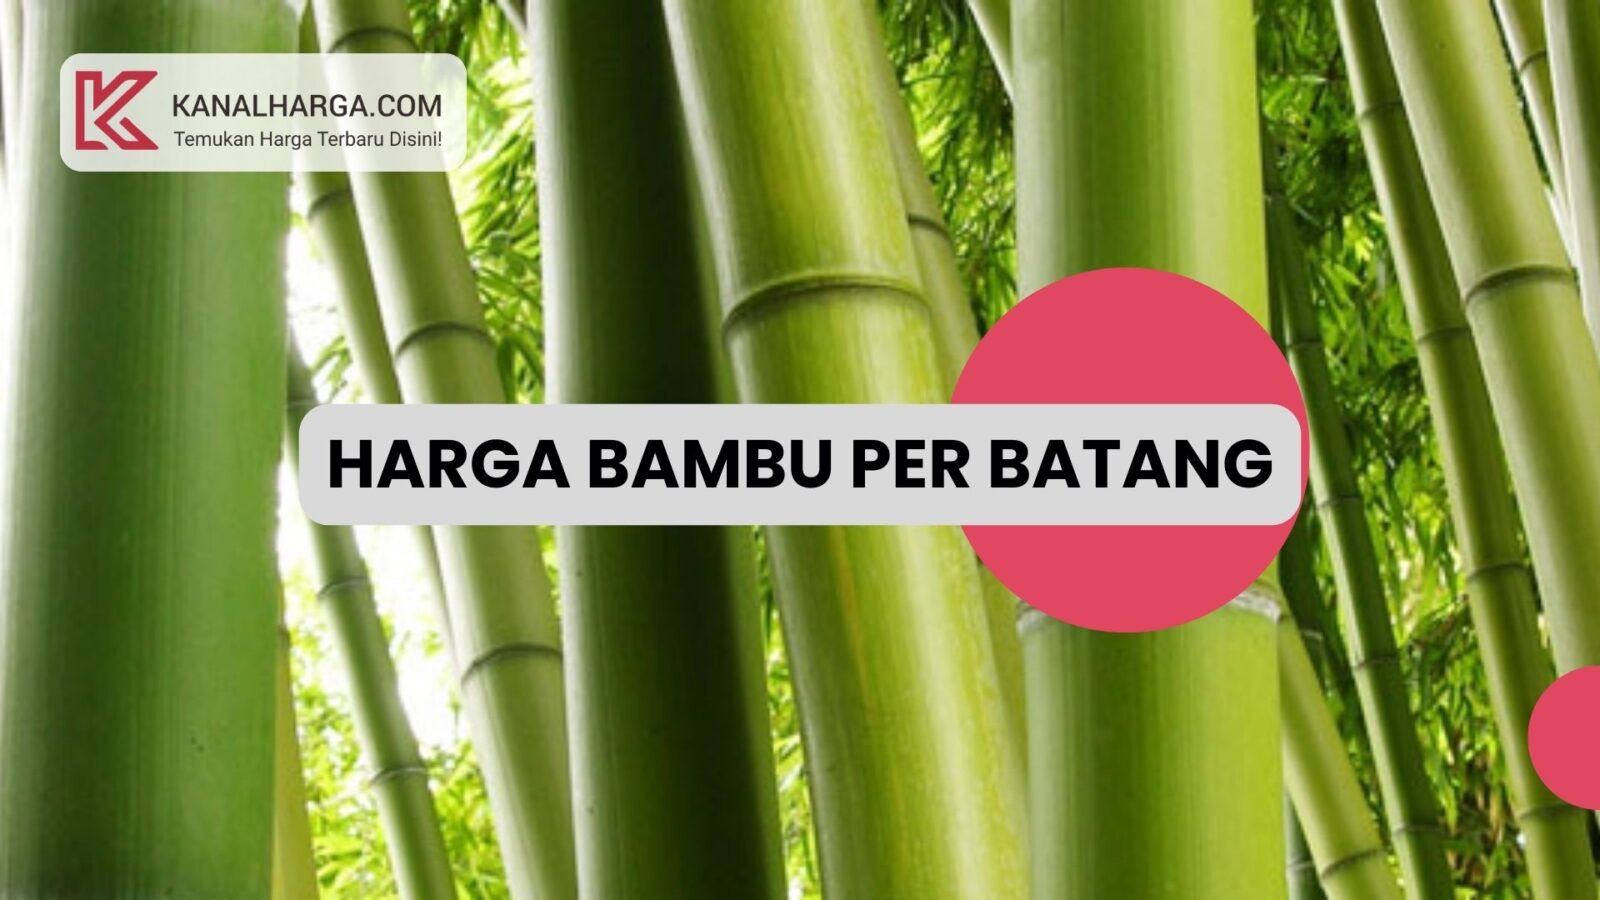 Harga Bambu per Batang Harga Bambu per Batang